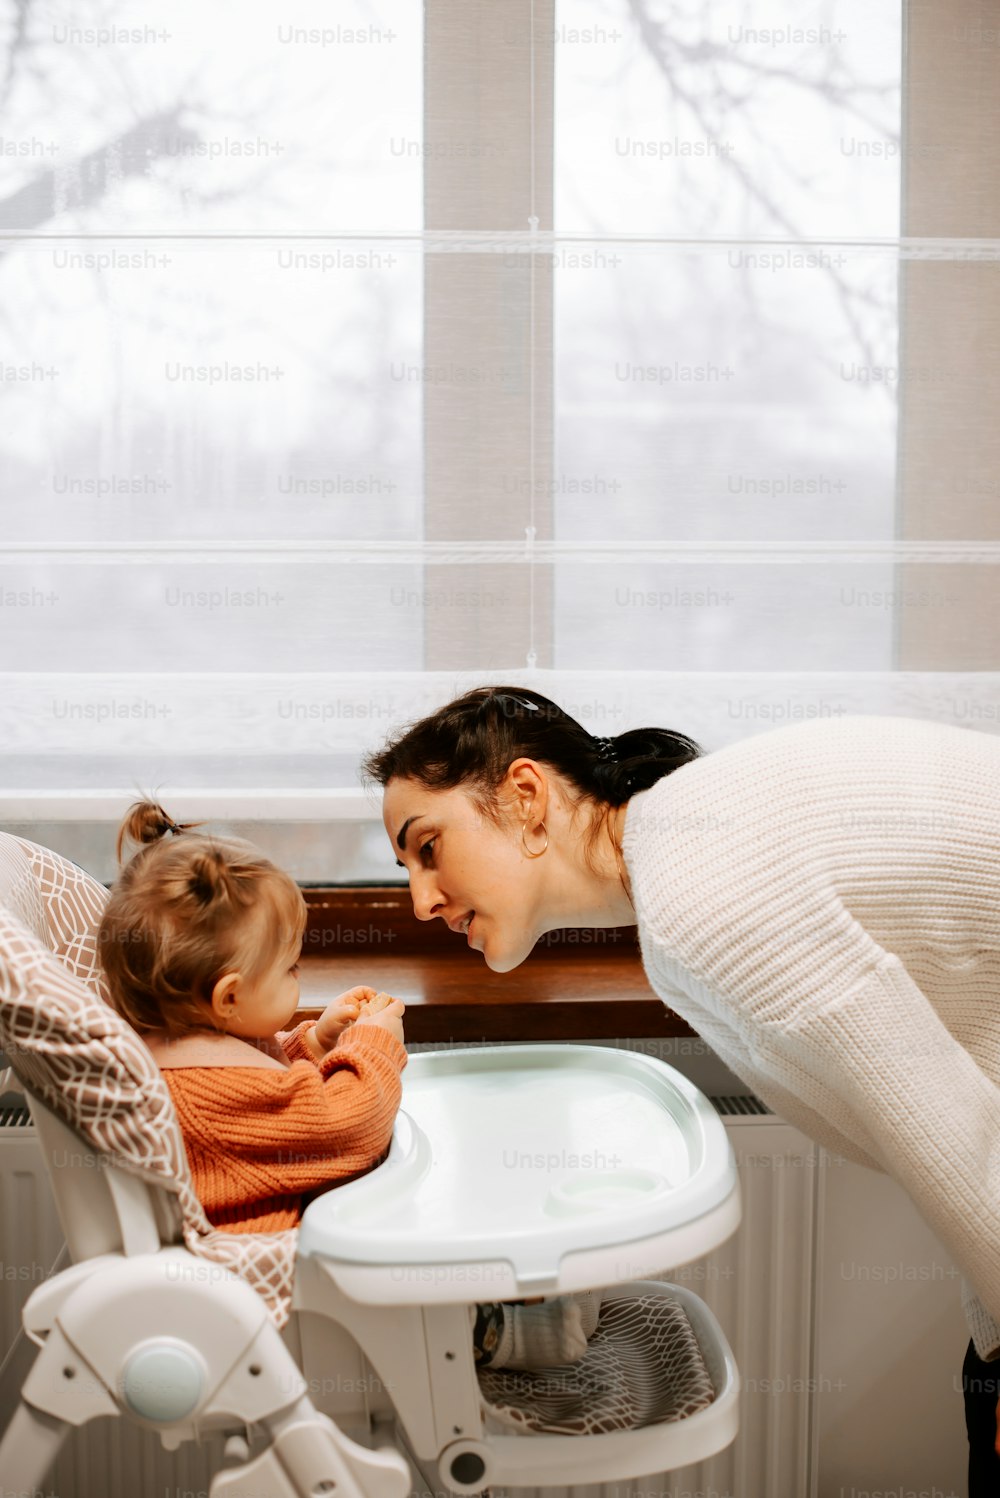 uma mulher e uma criança em uma banheira